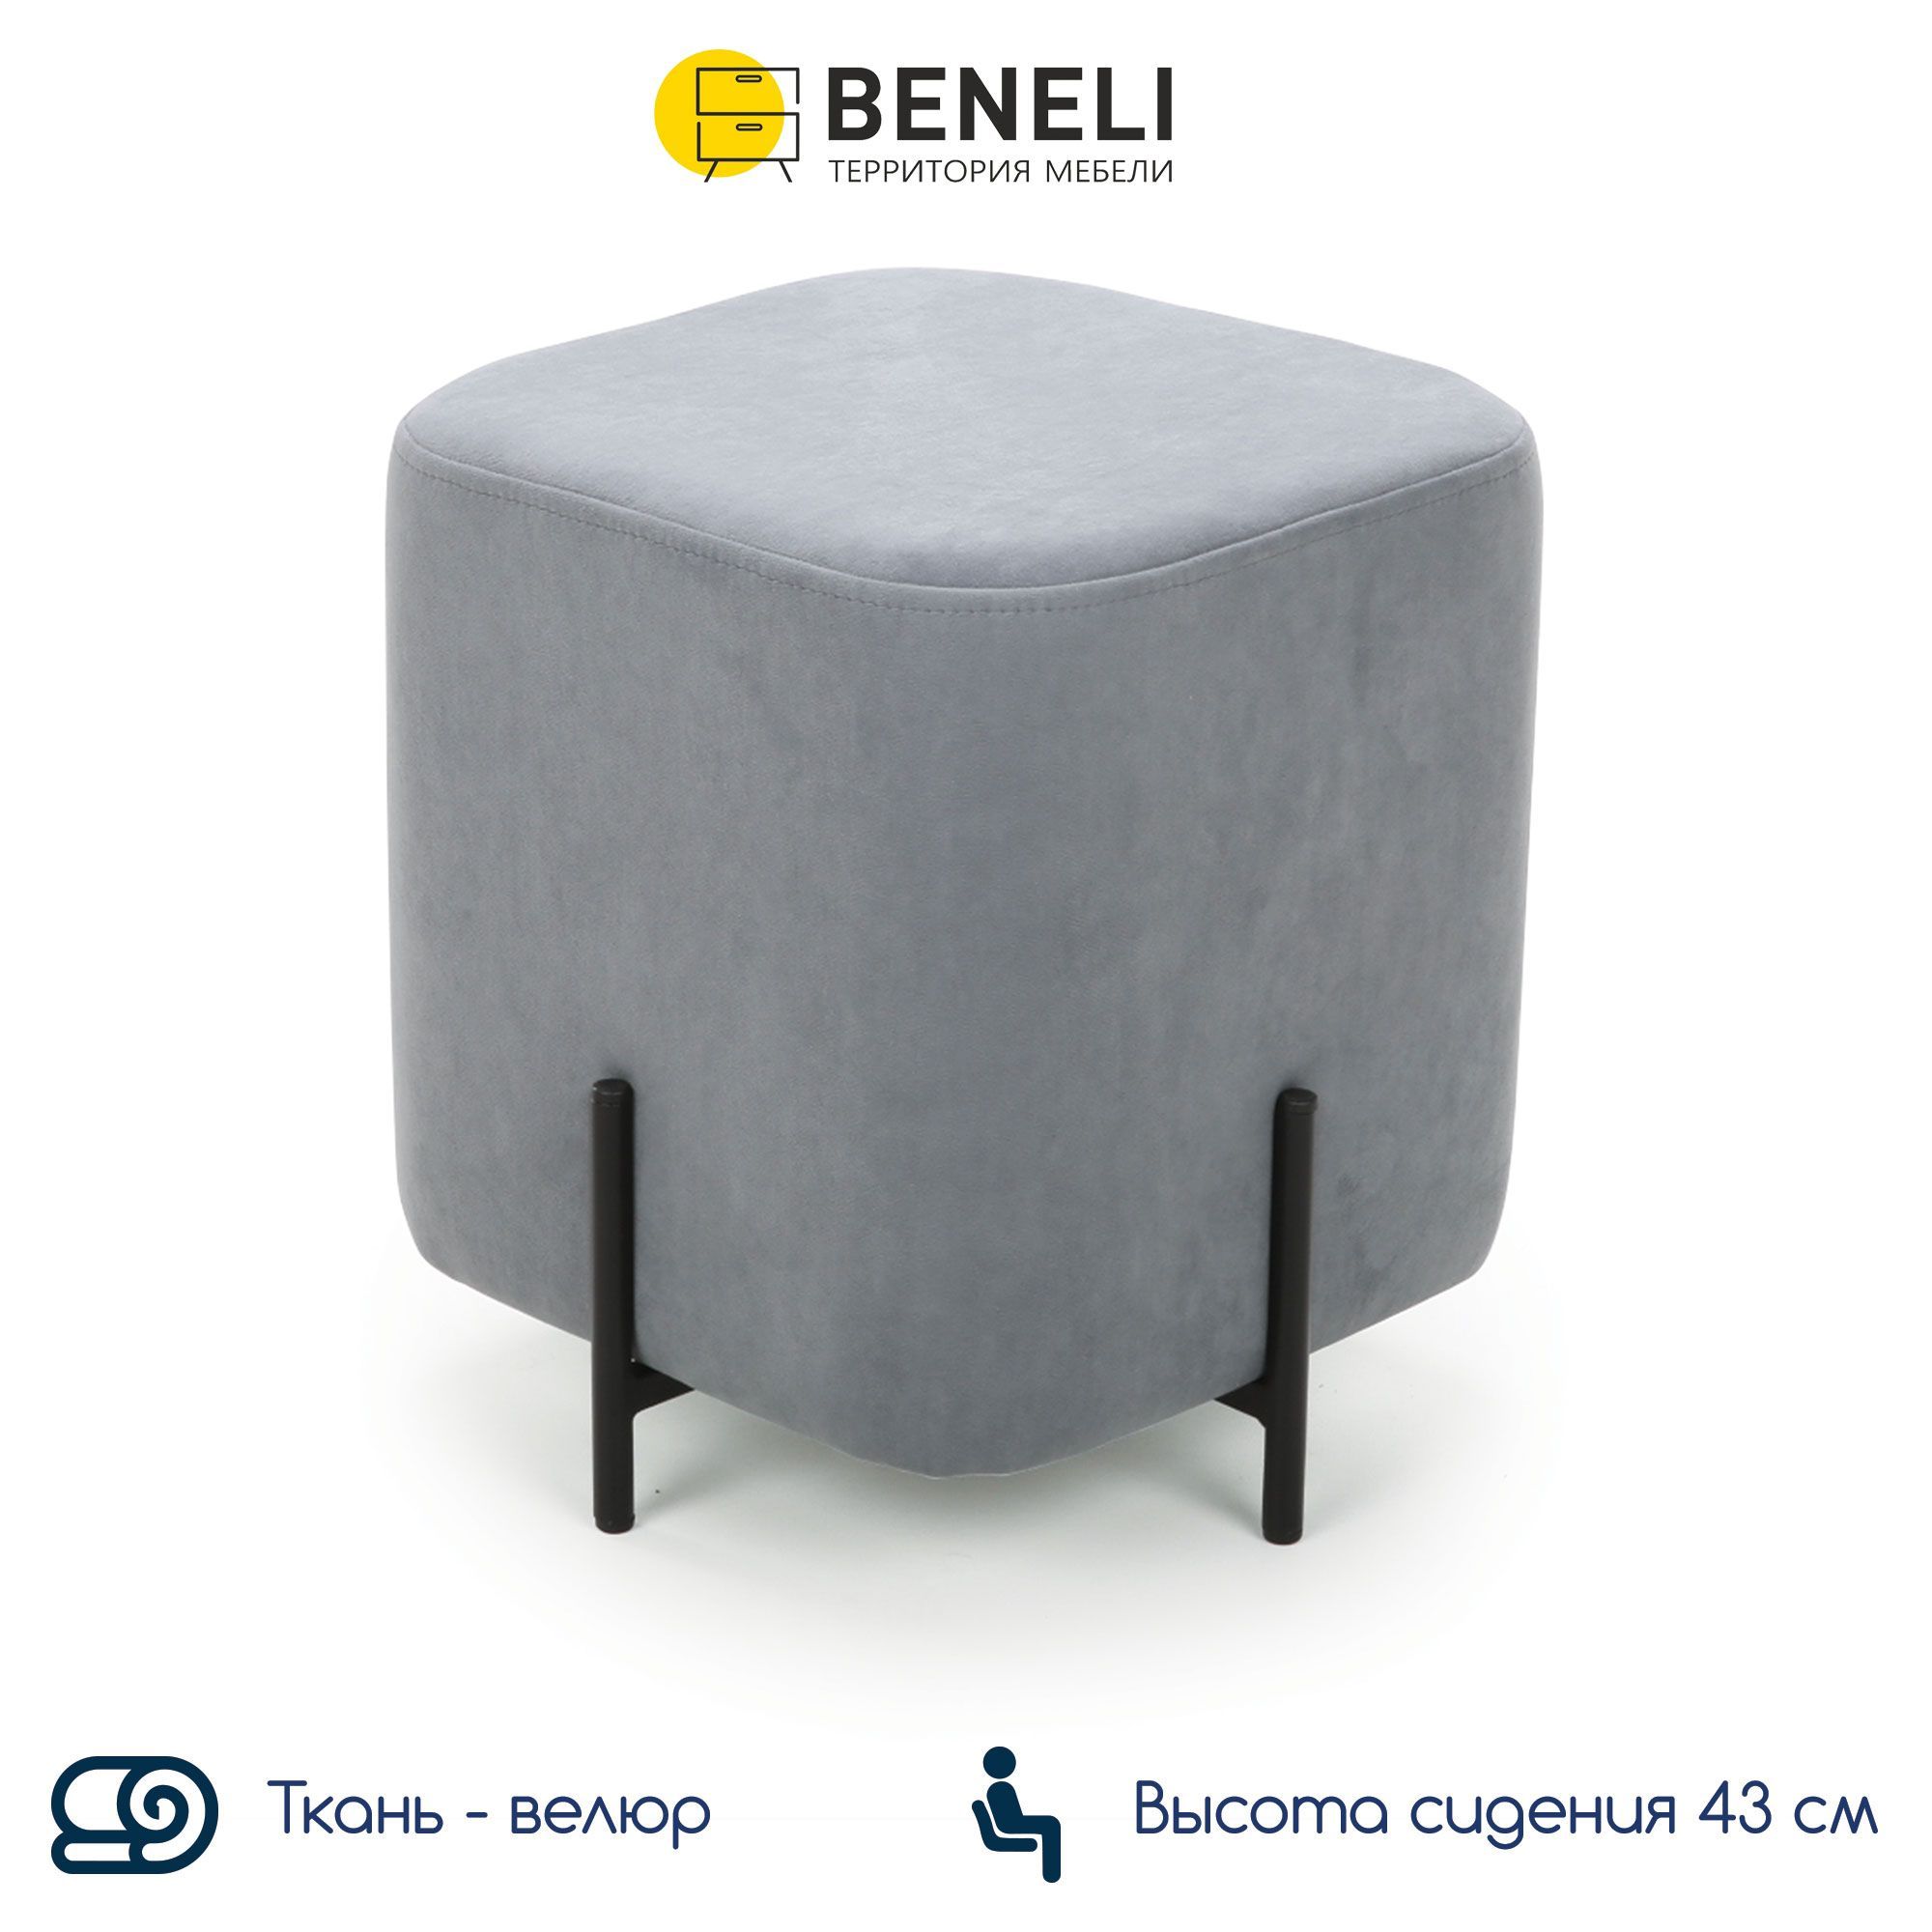 Пуф Beneli ГУФИ, квадратный, серый, велюр,38х38х43 см, 1 шт.